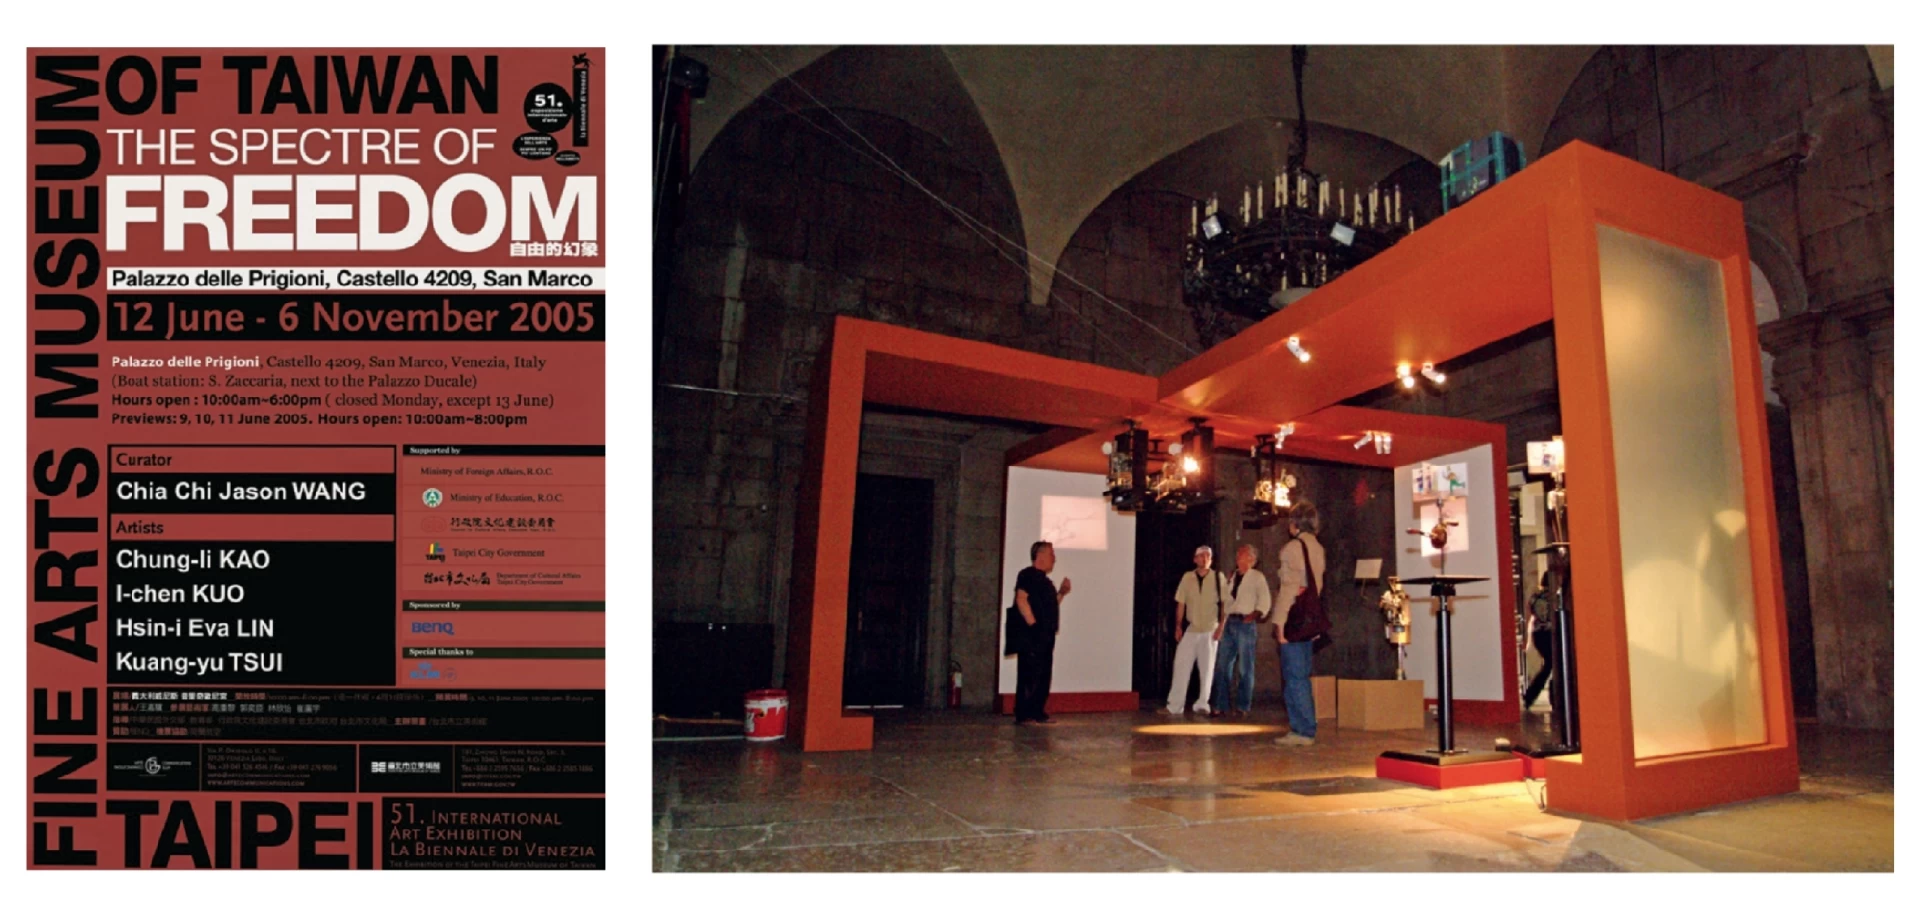 第51屆威尼斯雙年展台灣館「自由的幻象」海報及展場大廳一景-圖片